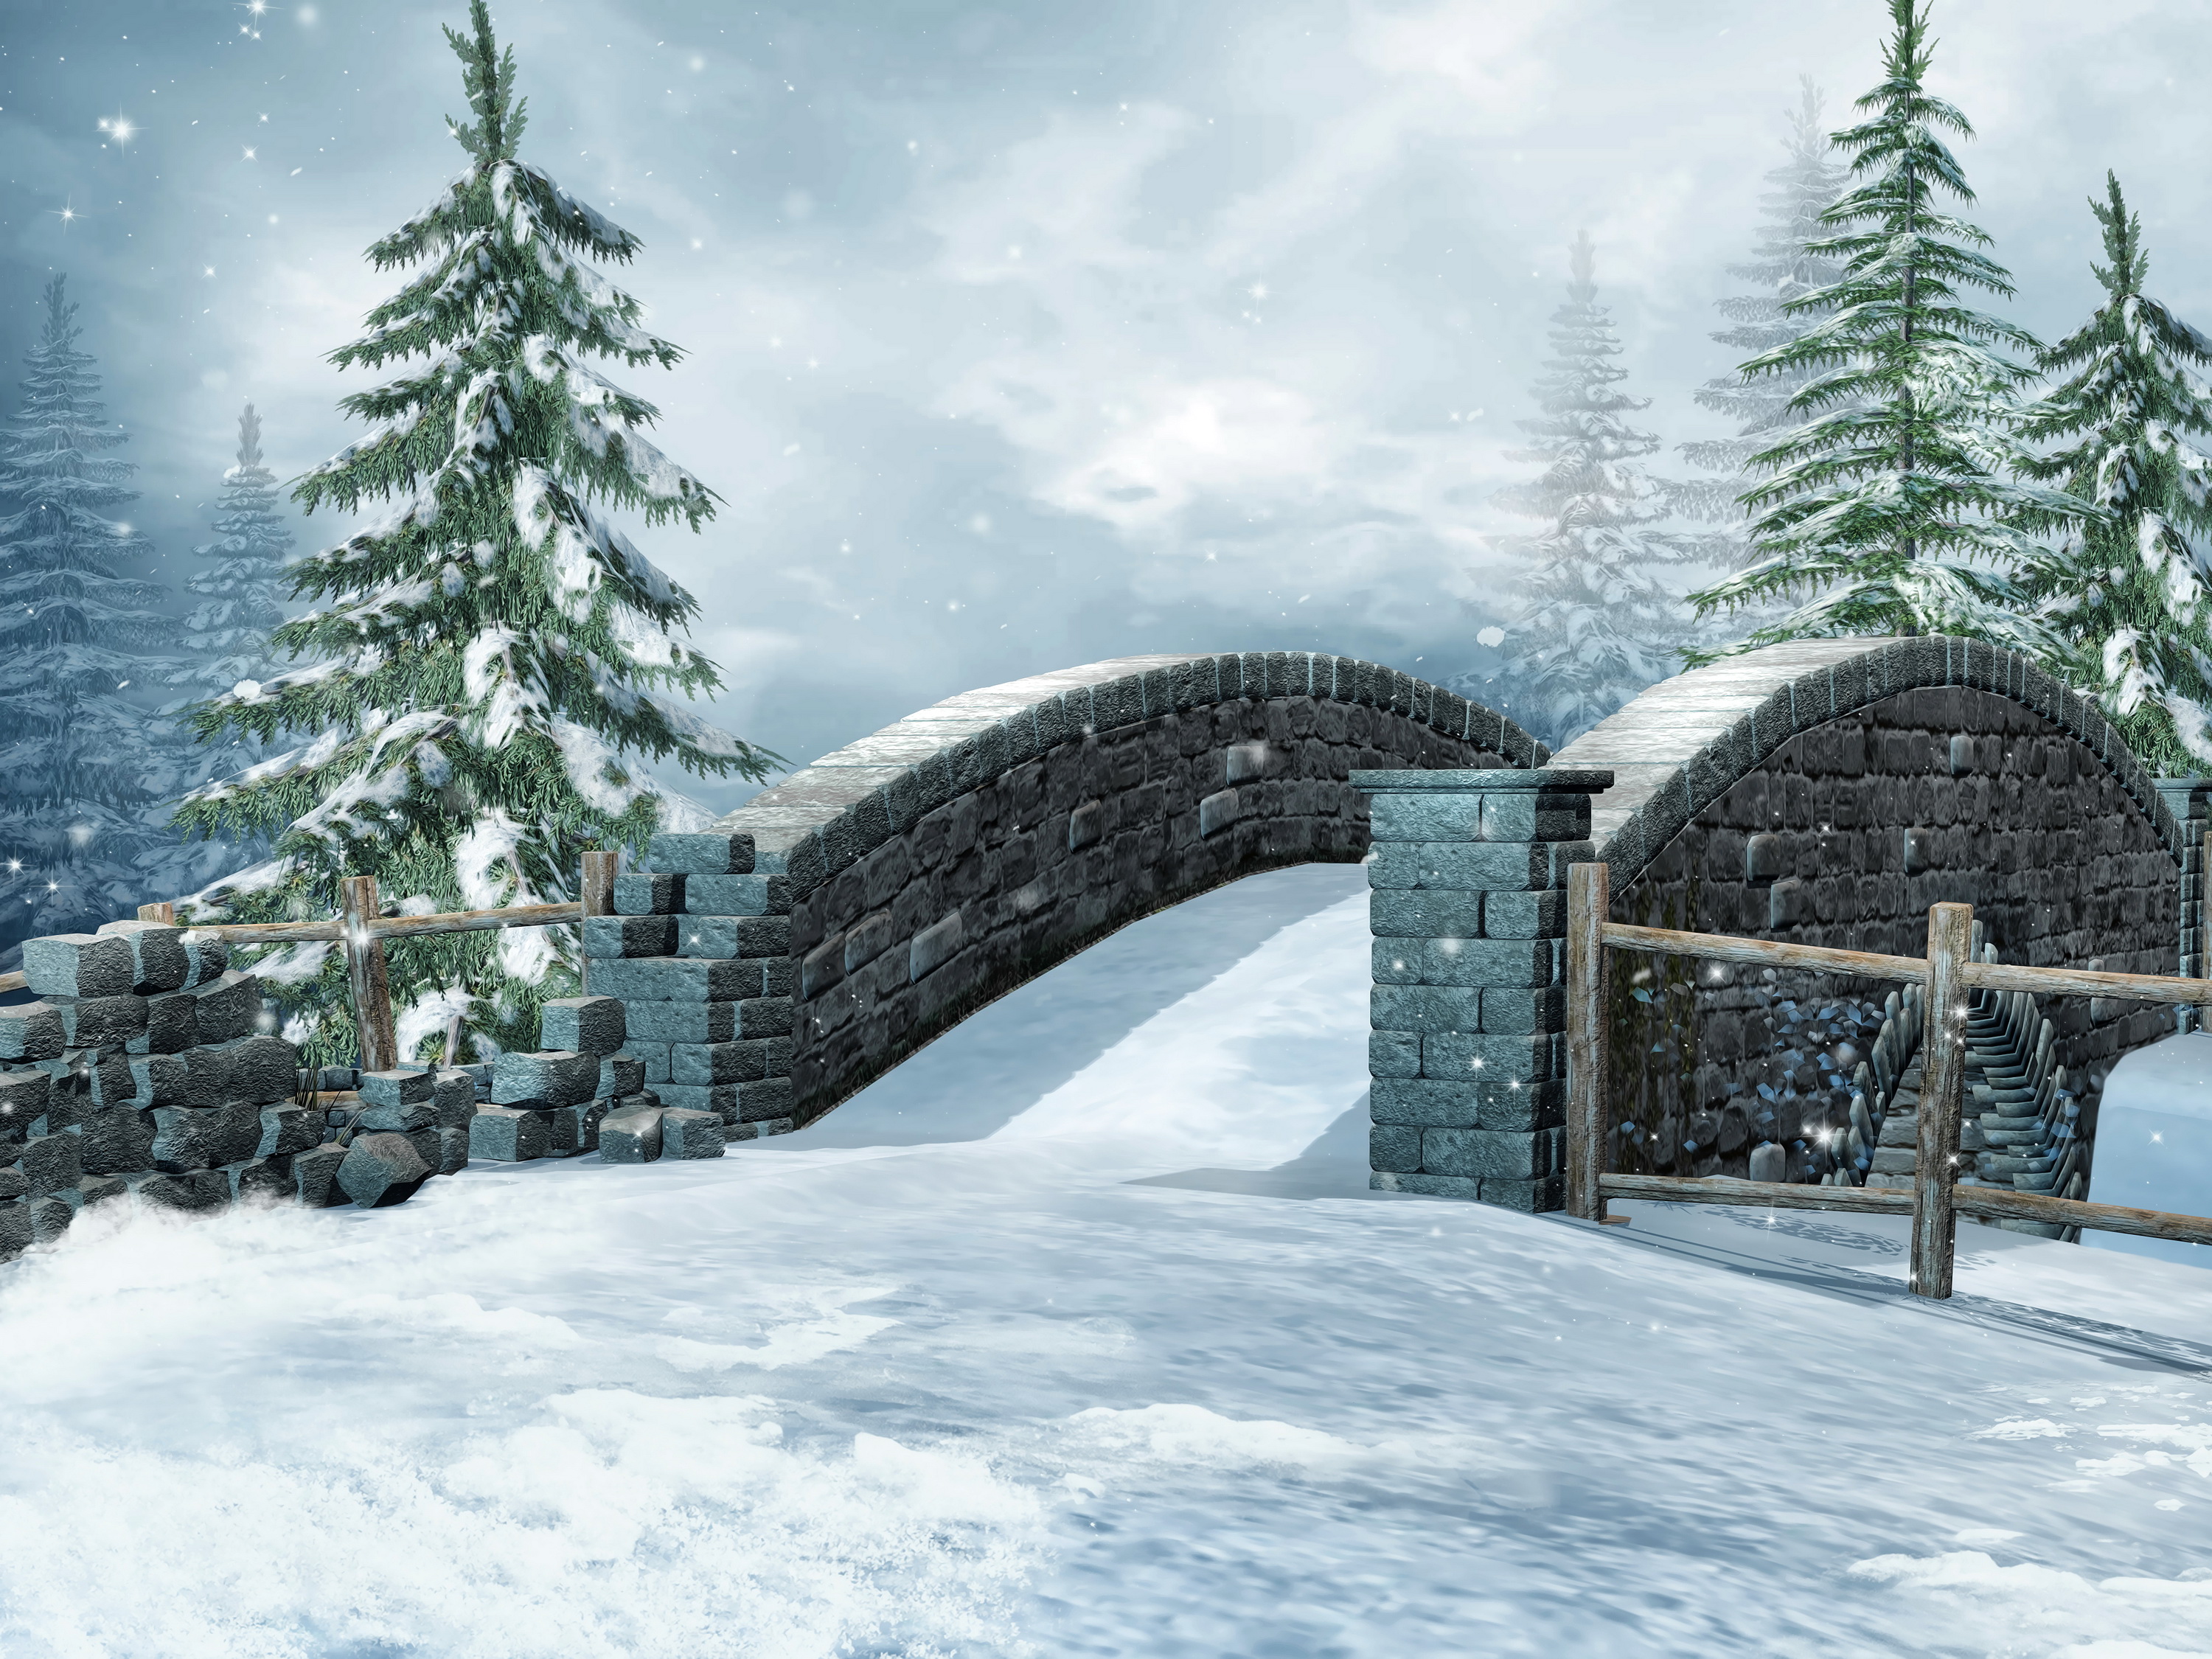 Mùa đông, cầu, tuyết, thiên nhiên, đồ họa 3D: Với những yêu thích sự kết hợp giữa thiên nhiên và công nghệ đồ họa, hình nền mùa đông với cầu, tuyết phủ trắng cùng cảnh thiên nhiên hoang sơ sẽ đem đến cho bạn trải nghiệm thật ấn tượng với những hiệu ứng 3D đầy mê hoặc.